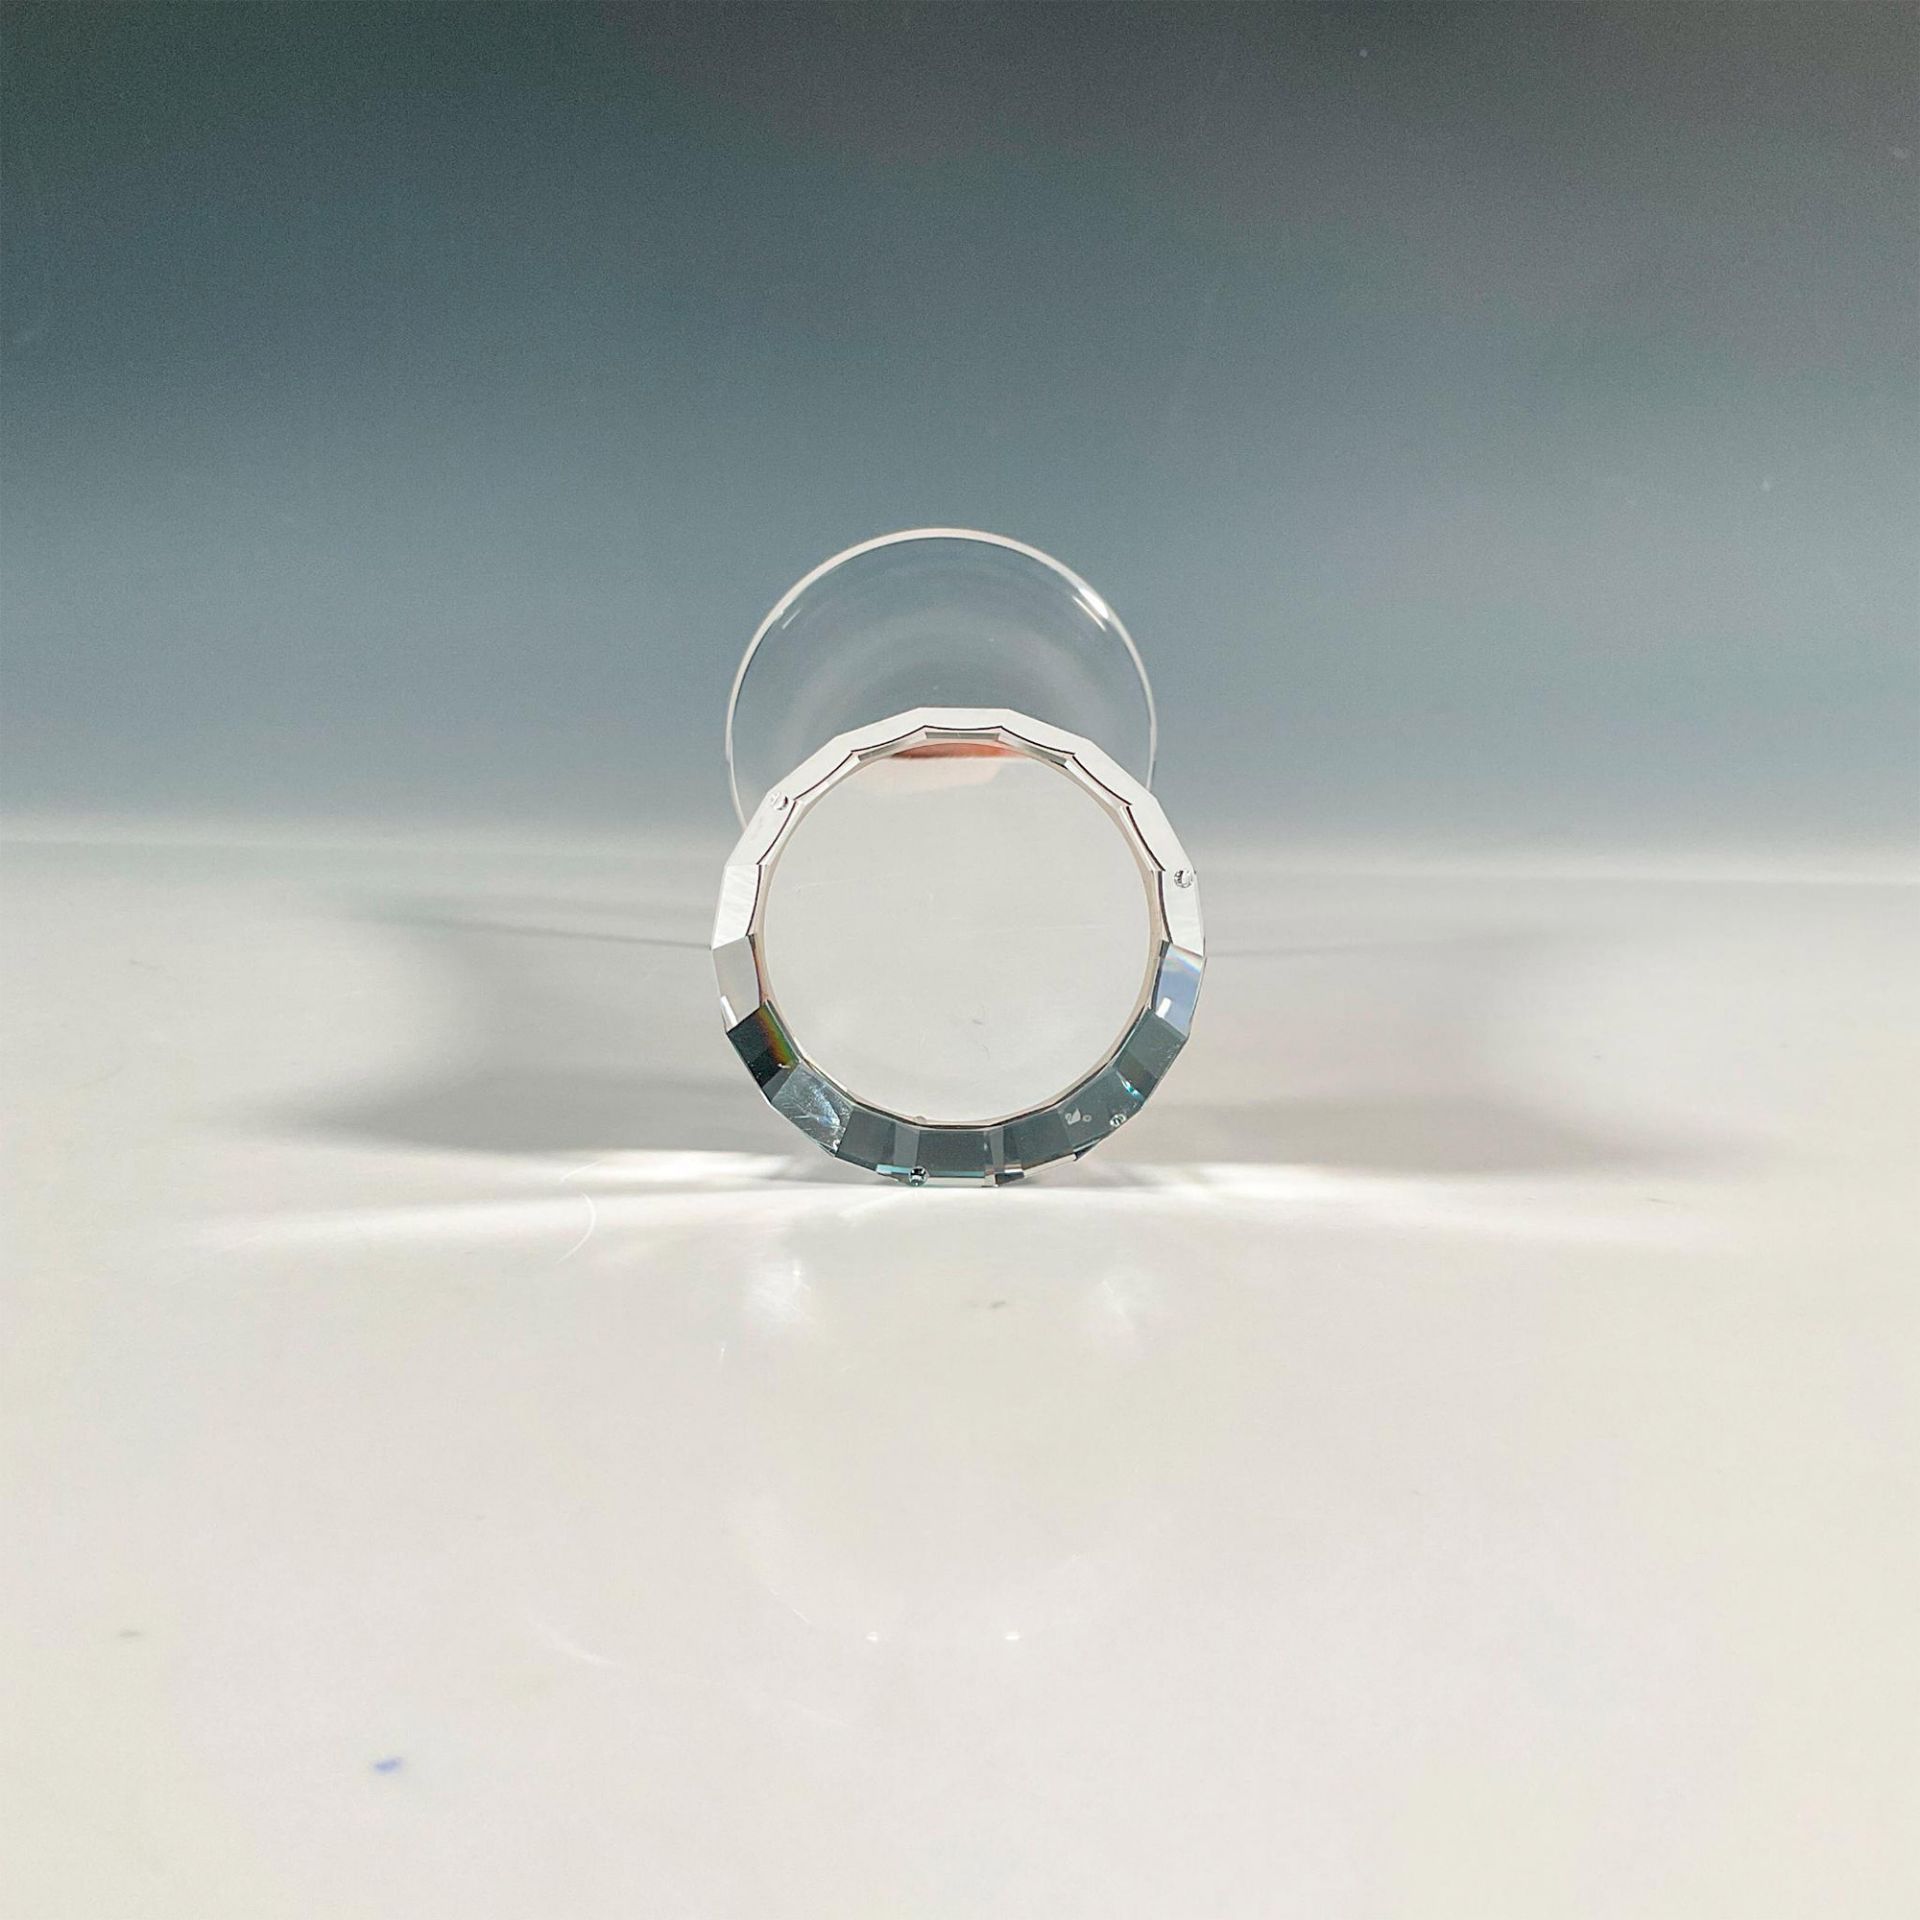 Swarovski Crystal Vase, Crystalline - Image 3 of 4